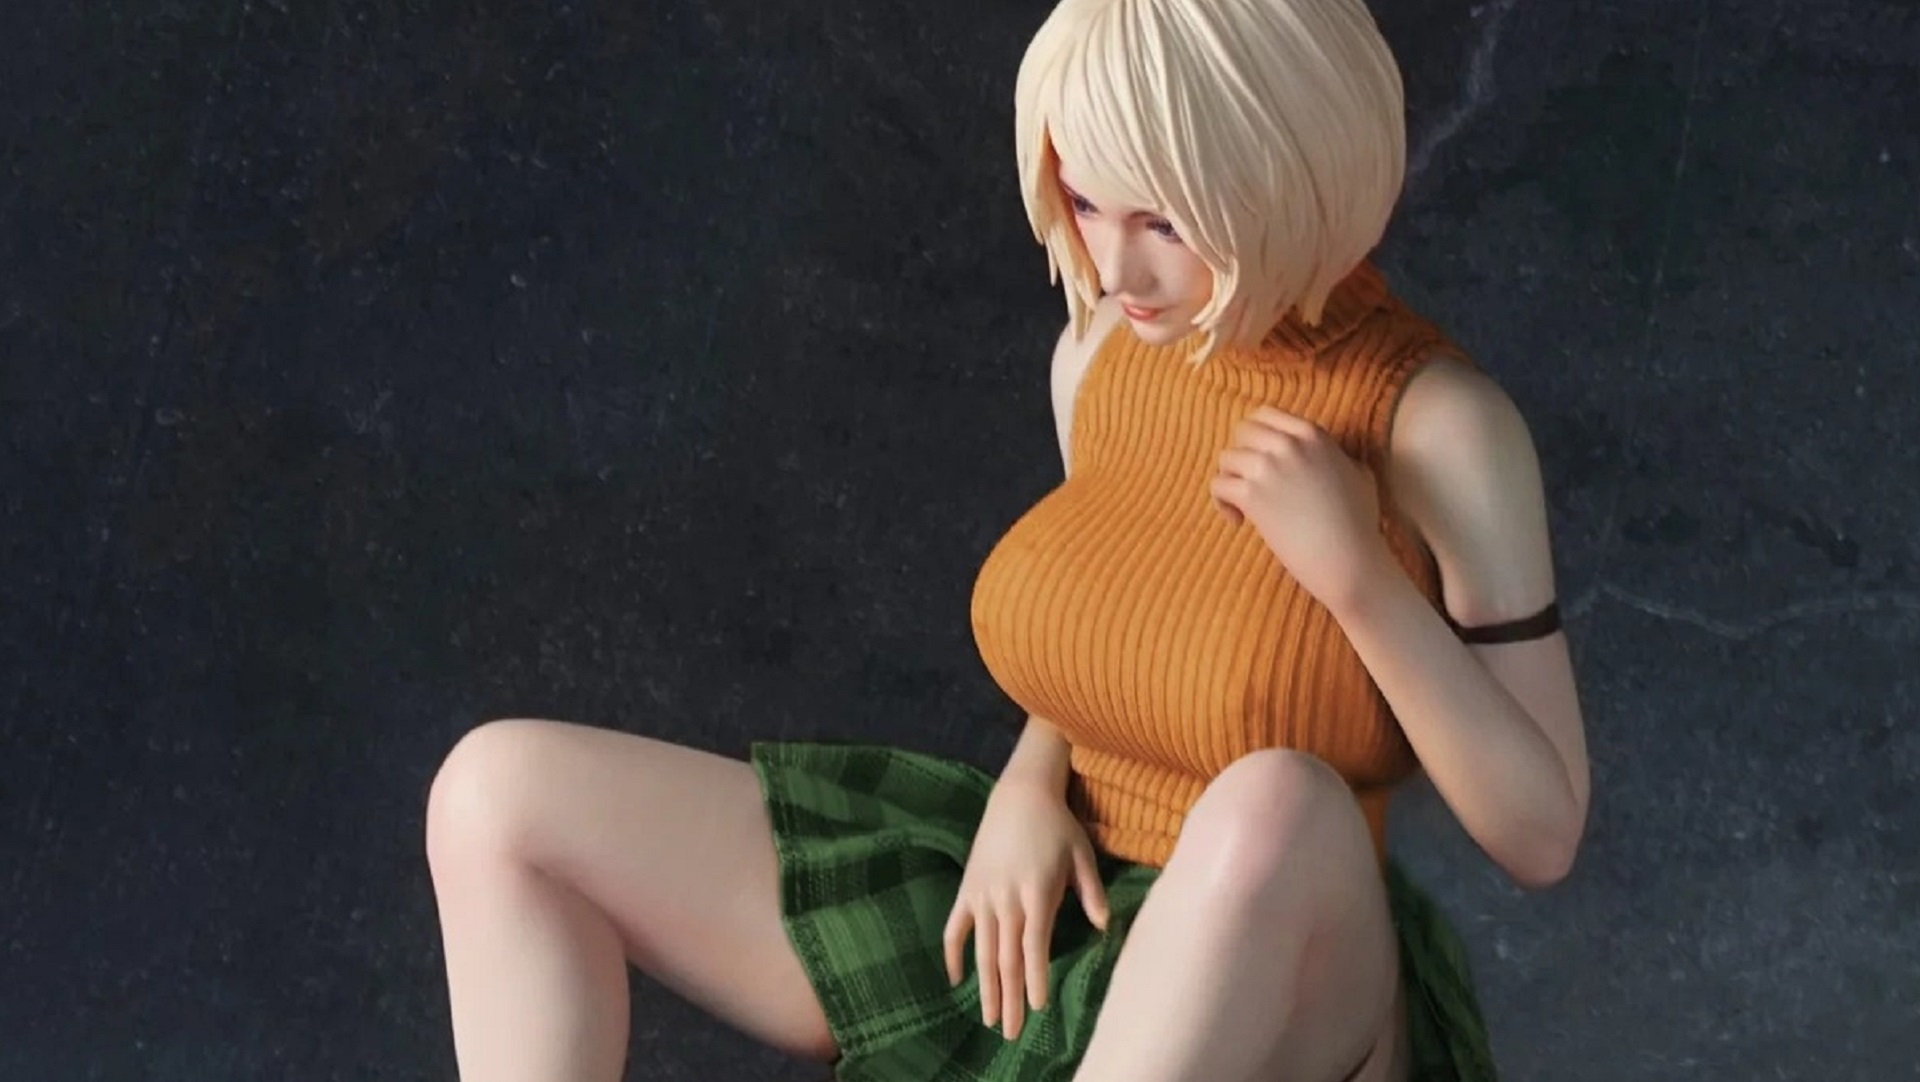 Представлена новая эротическая фигурка Эшли из Resident Evil 4